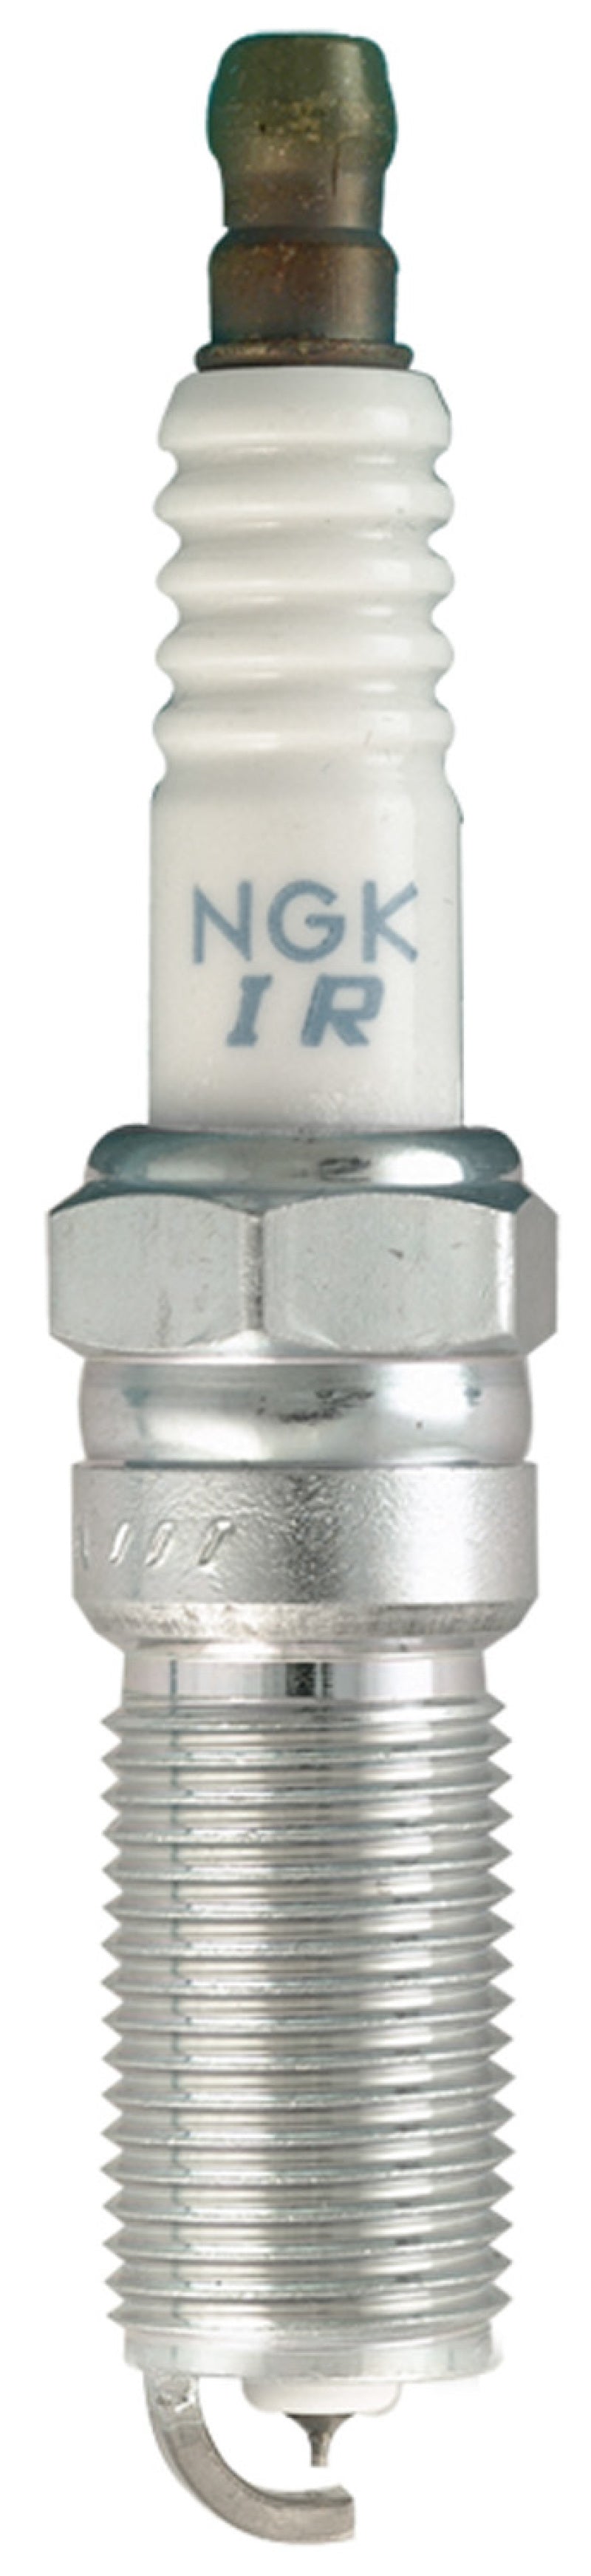 NGK Laser Iridium Spark Plug Box of 4 (ILTR6F9)